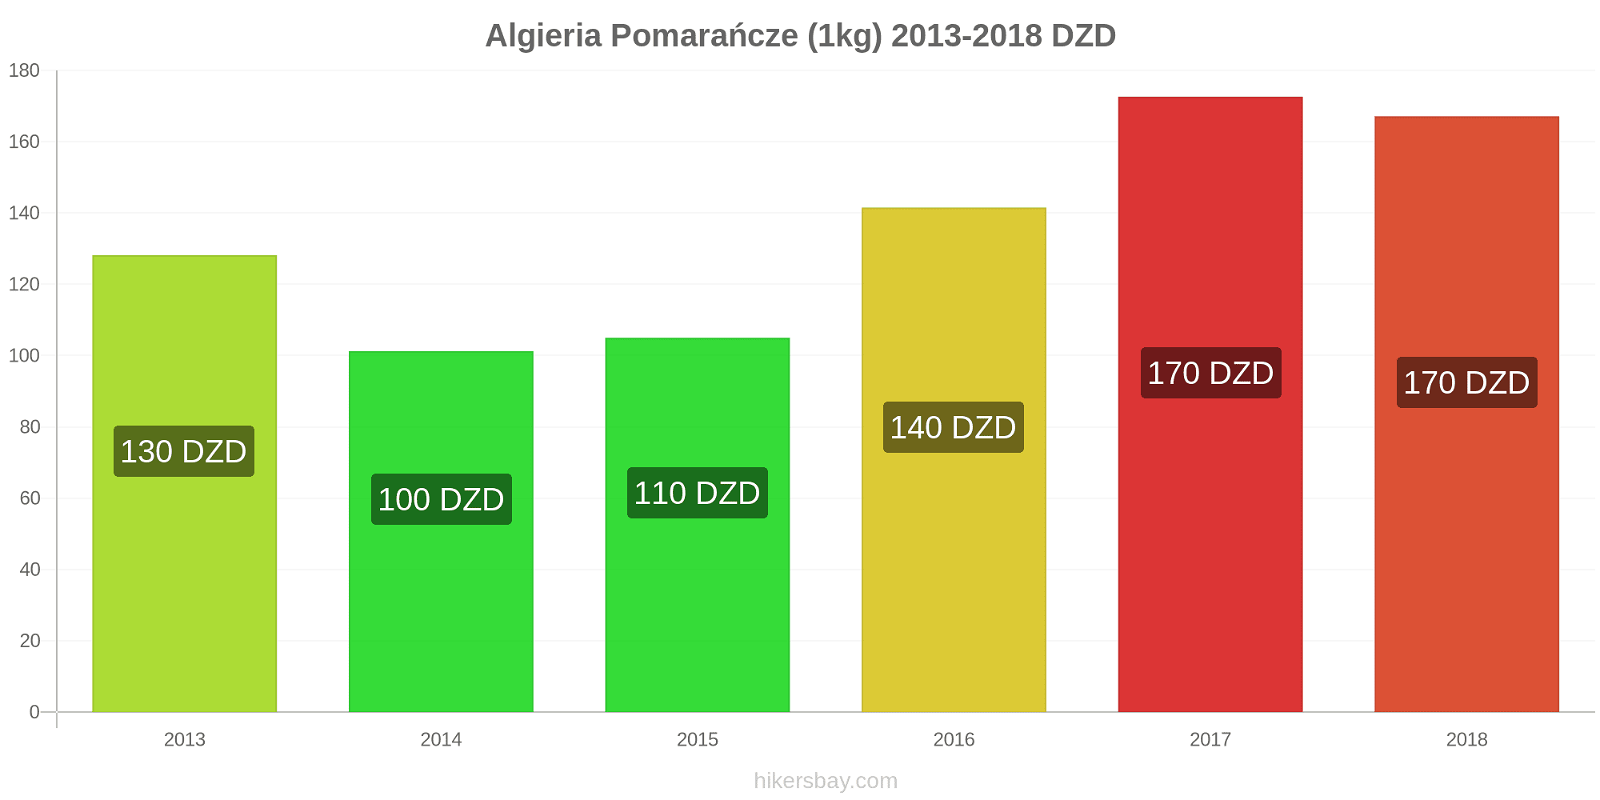 Algieria zmiany cen Pomarańcze (1kg) hikersbay.com